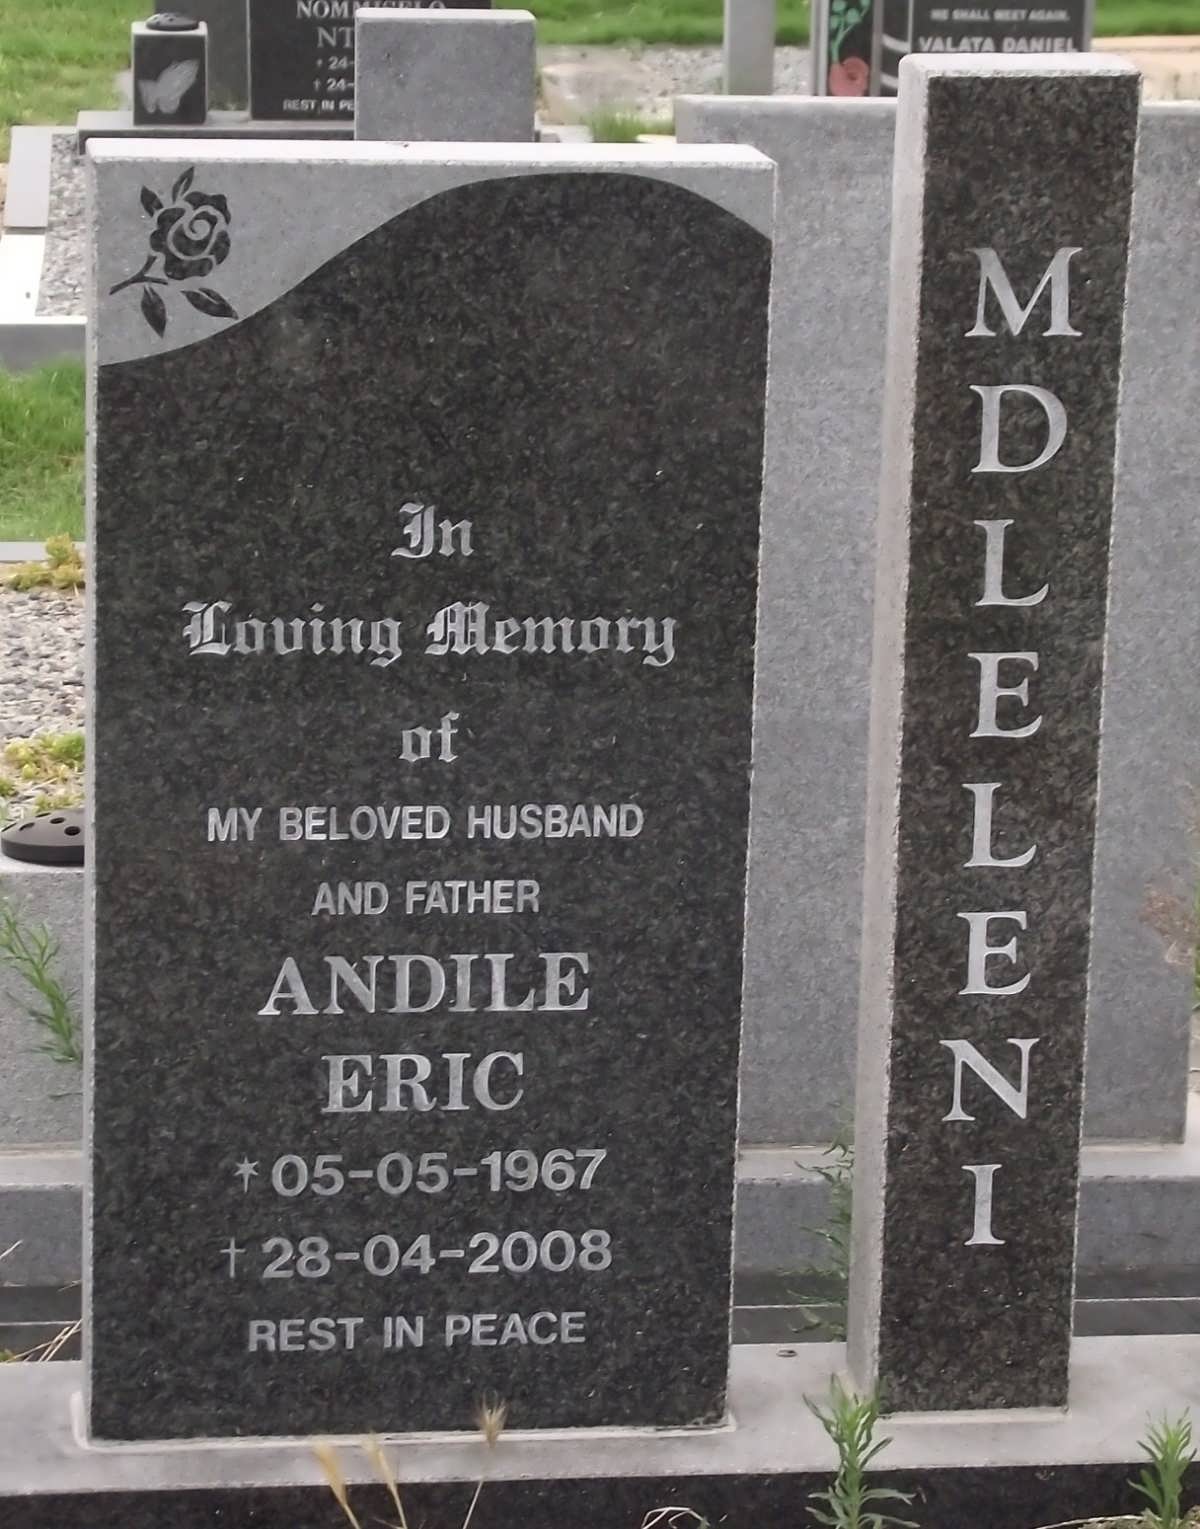 MDLELENI Andile Eric 1967-2008